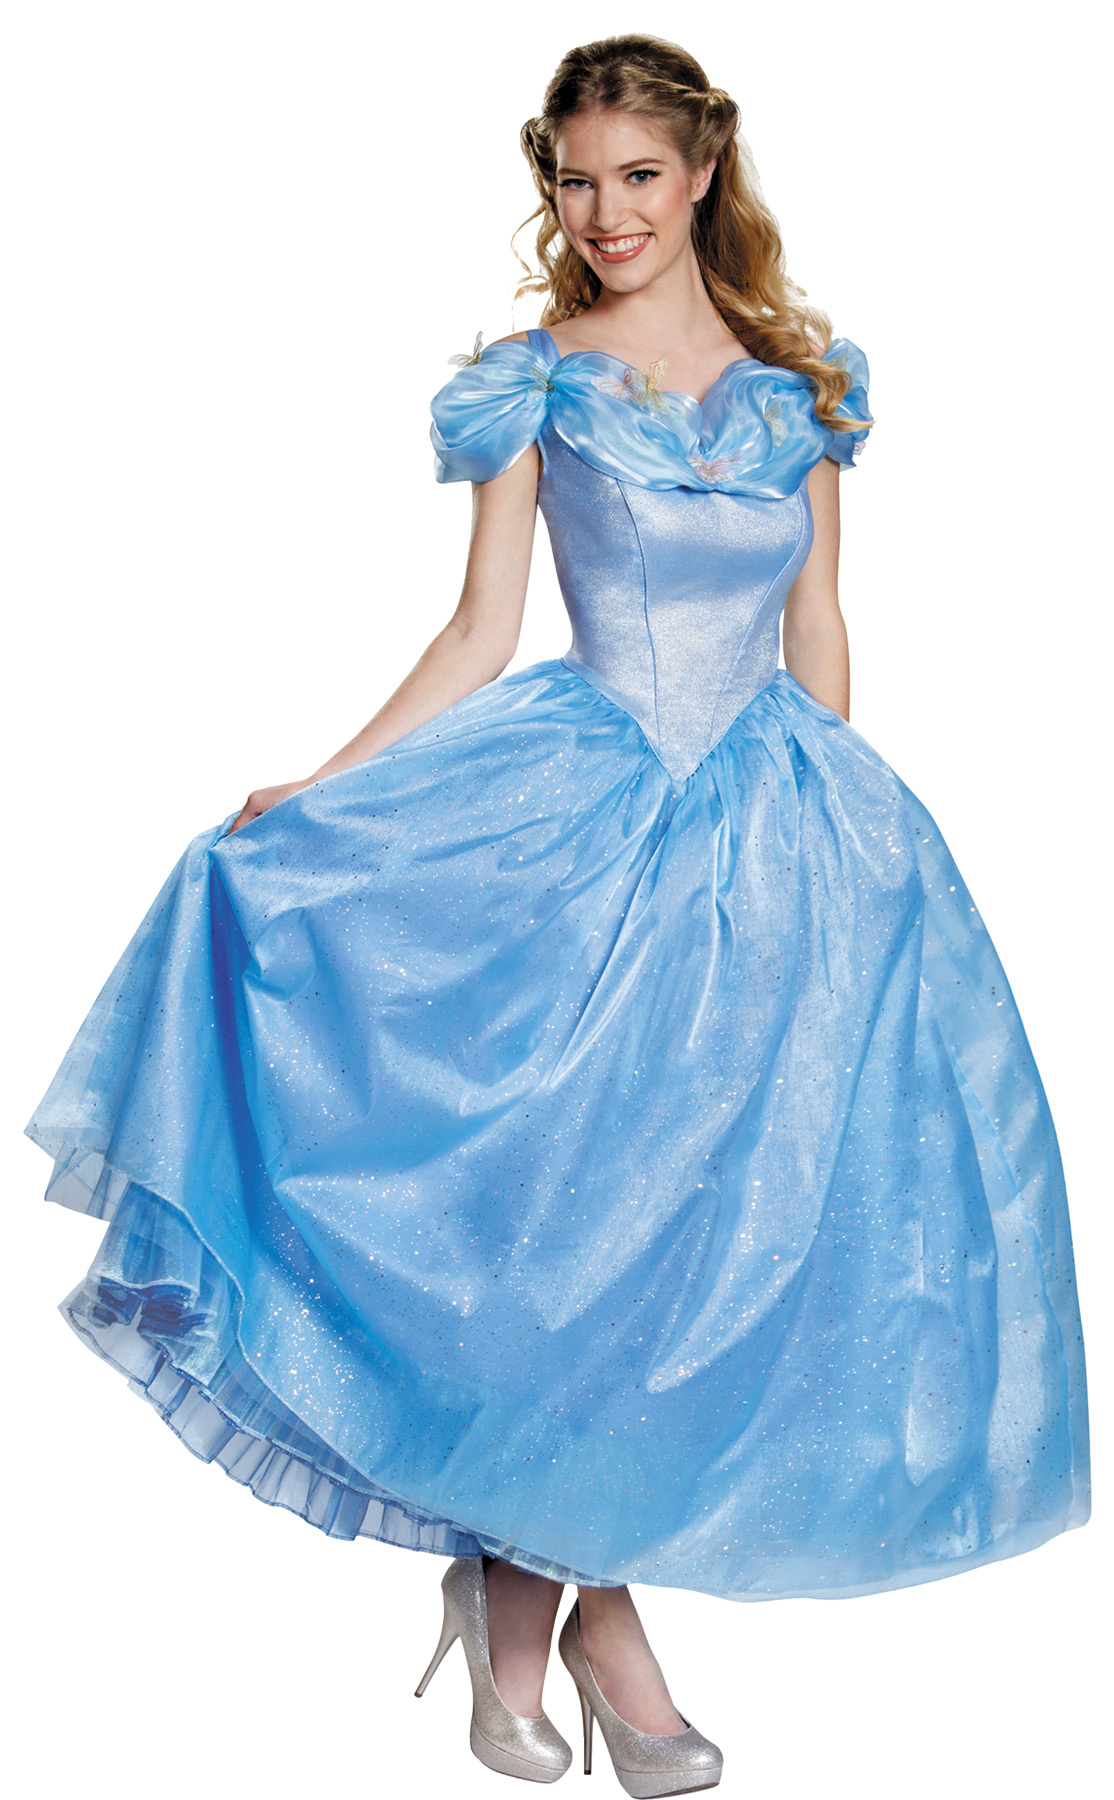 Women's Cinderella Prestige Costume - CostumePub.com